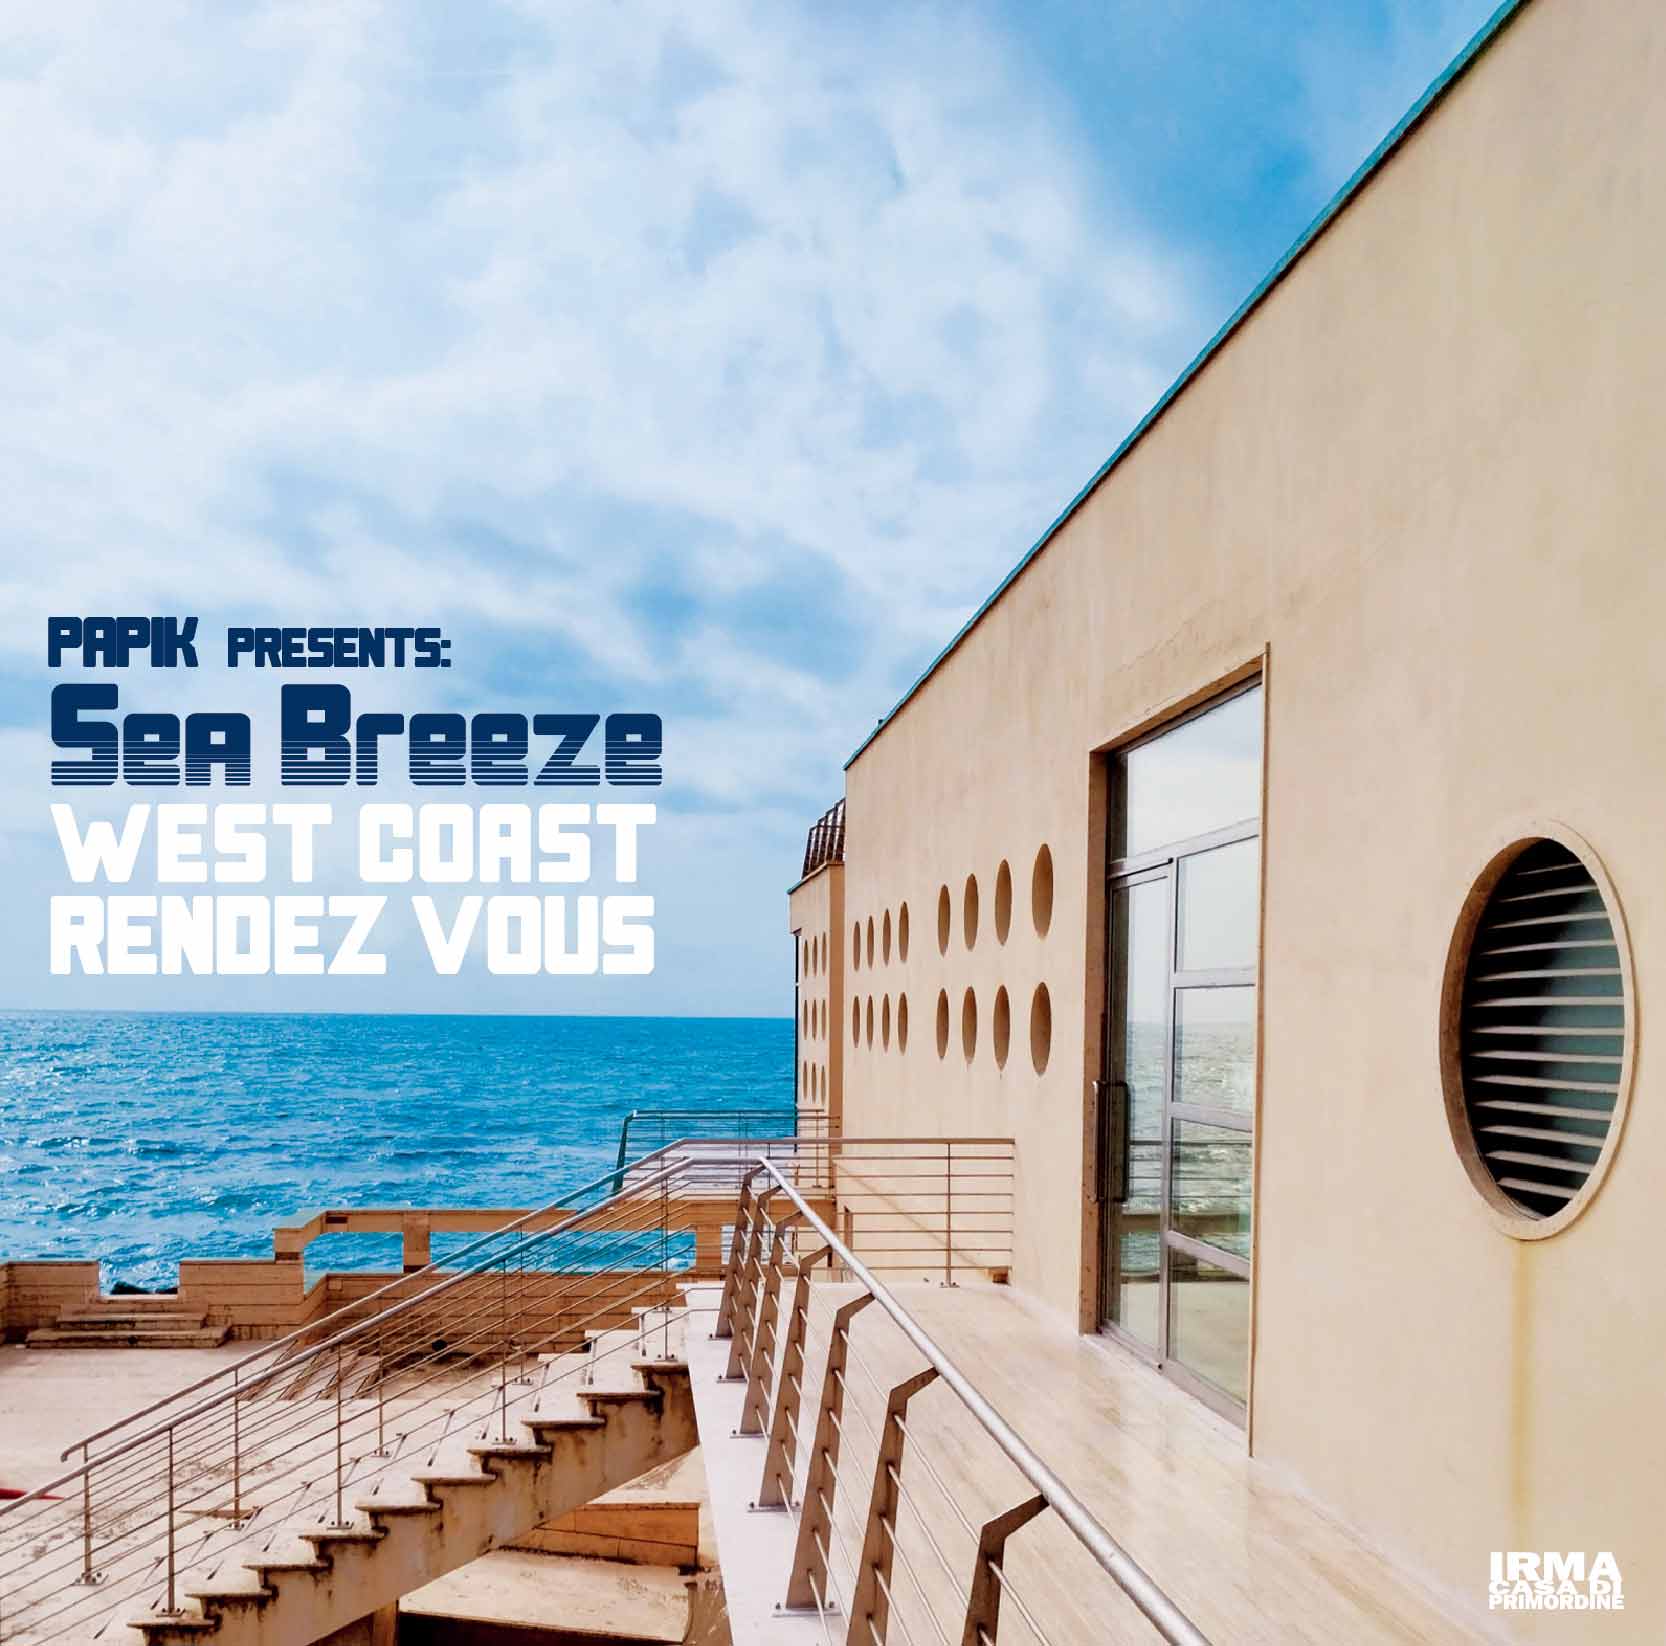 PAPIK presents SEA BREEZE「West Coast Rendez Vous」